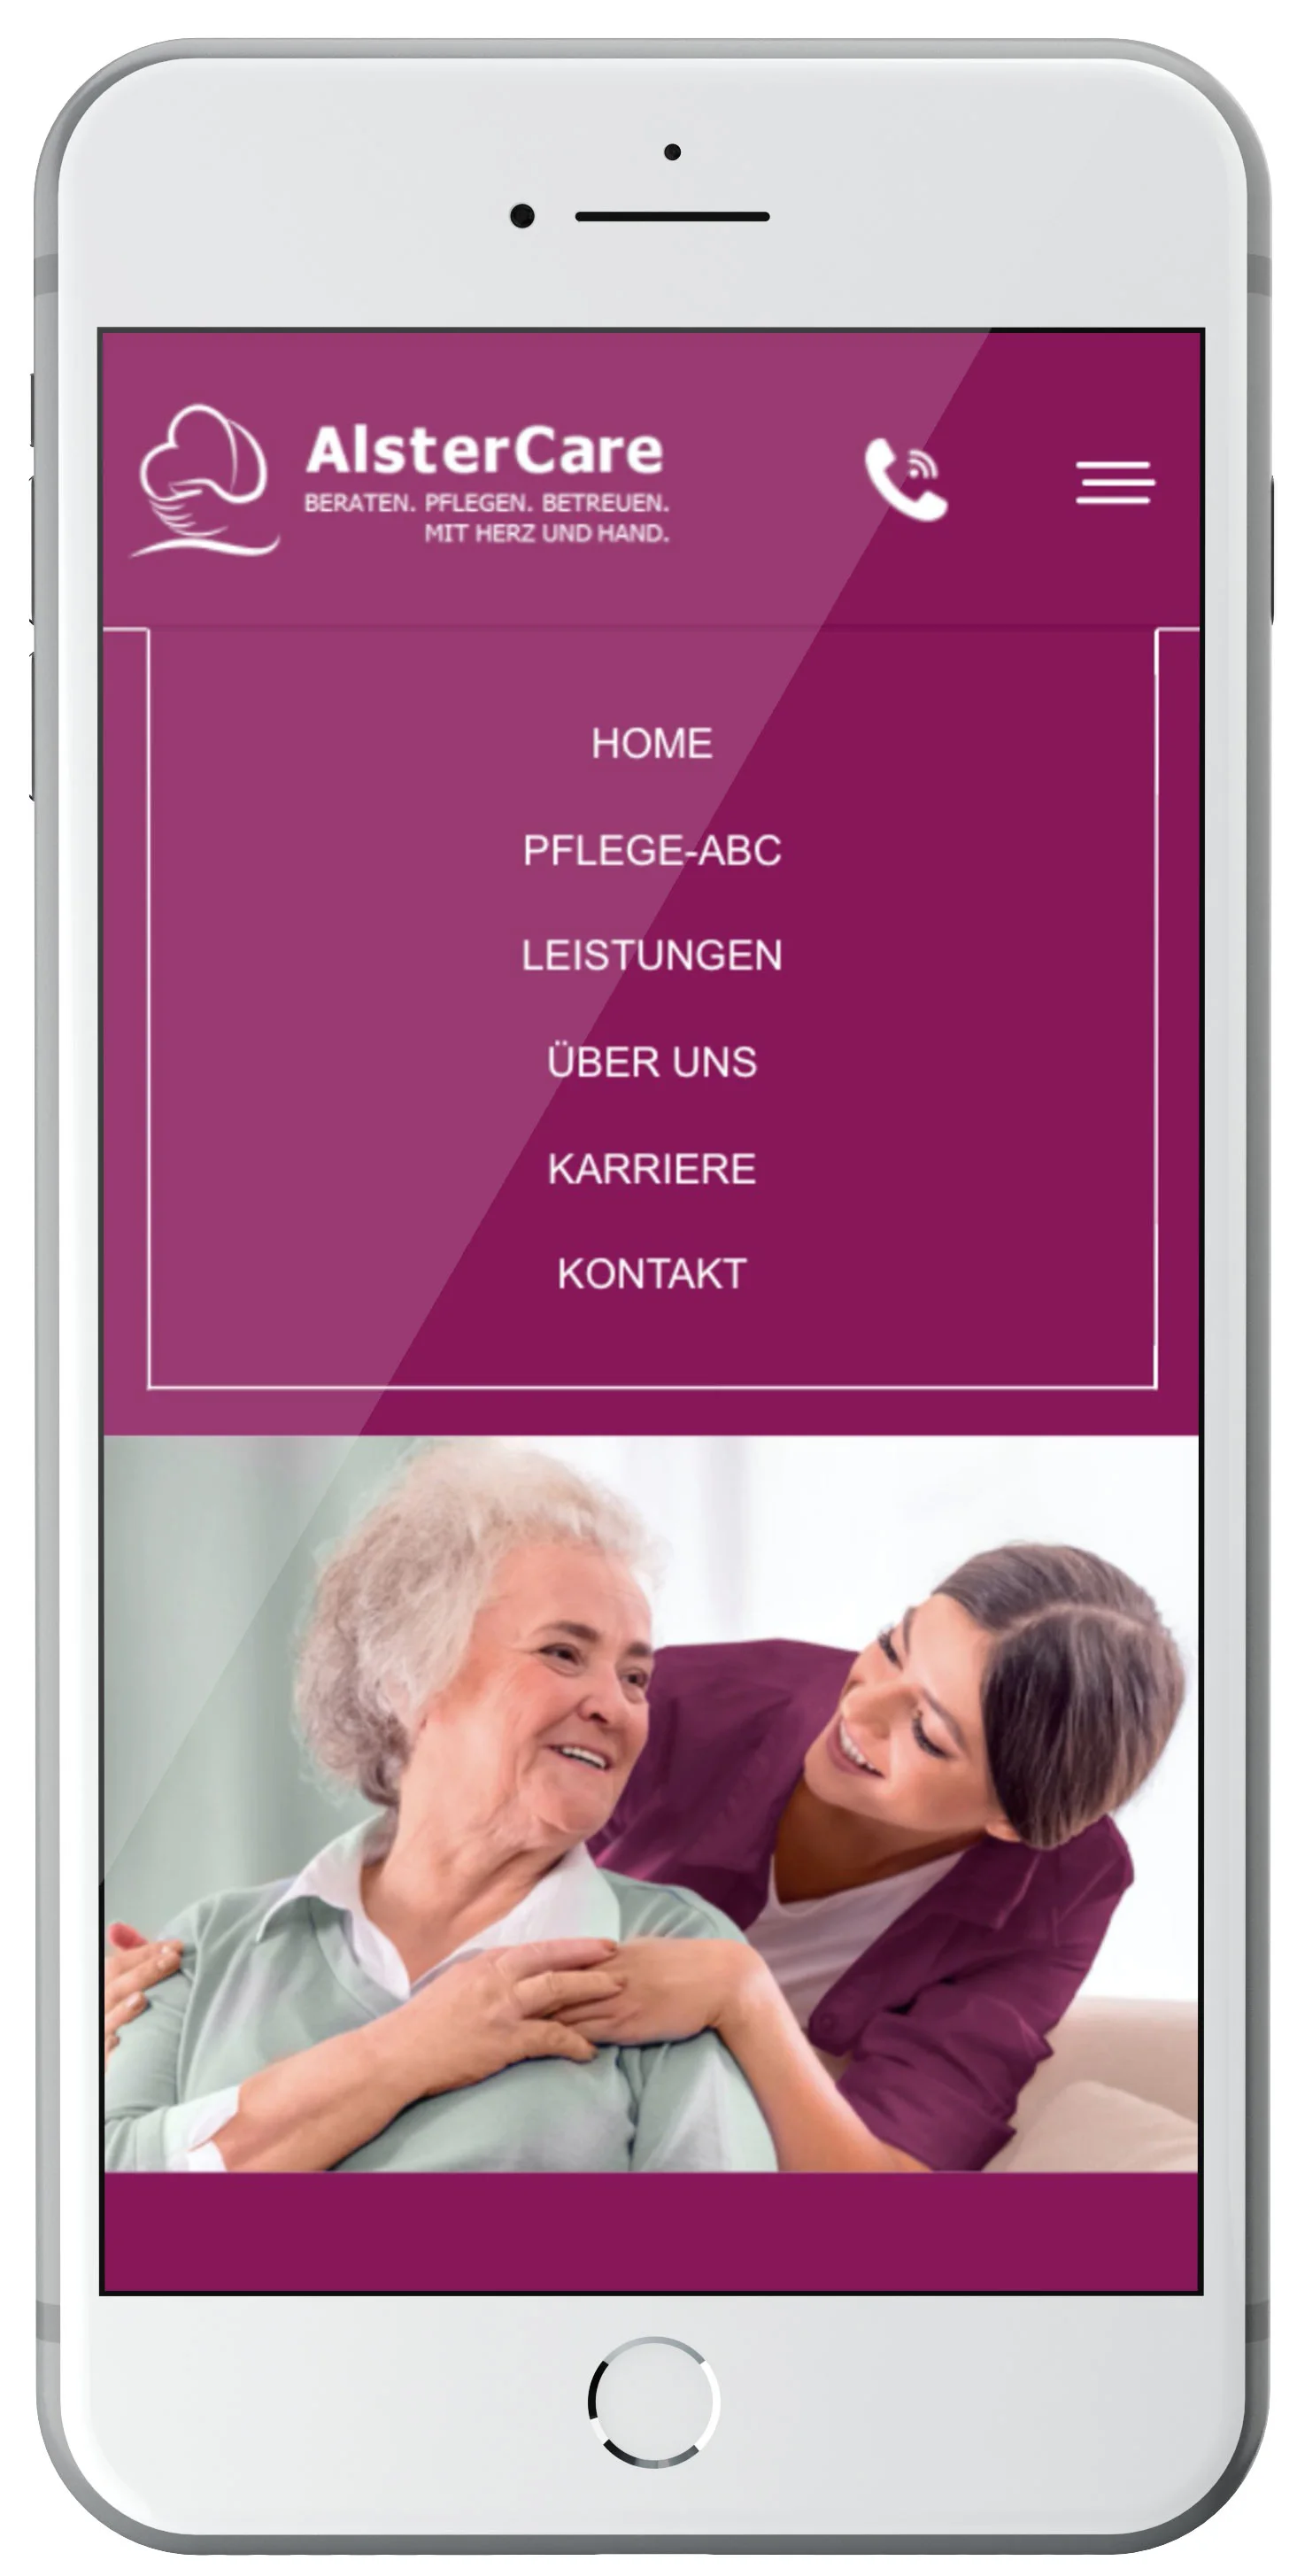 AlsterCare - Pflege mit Herz - TYPO3 Webseite - Referenz6